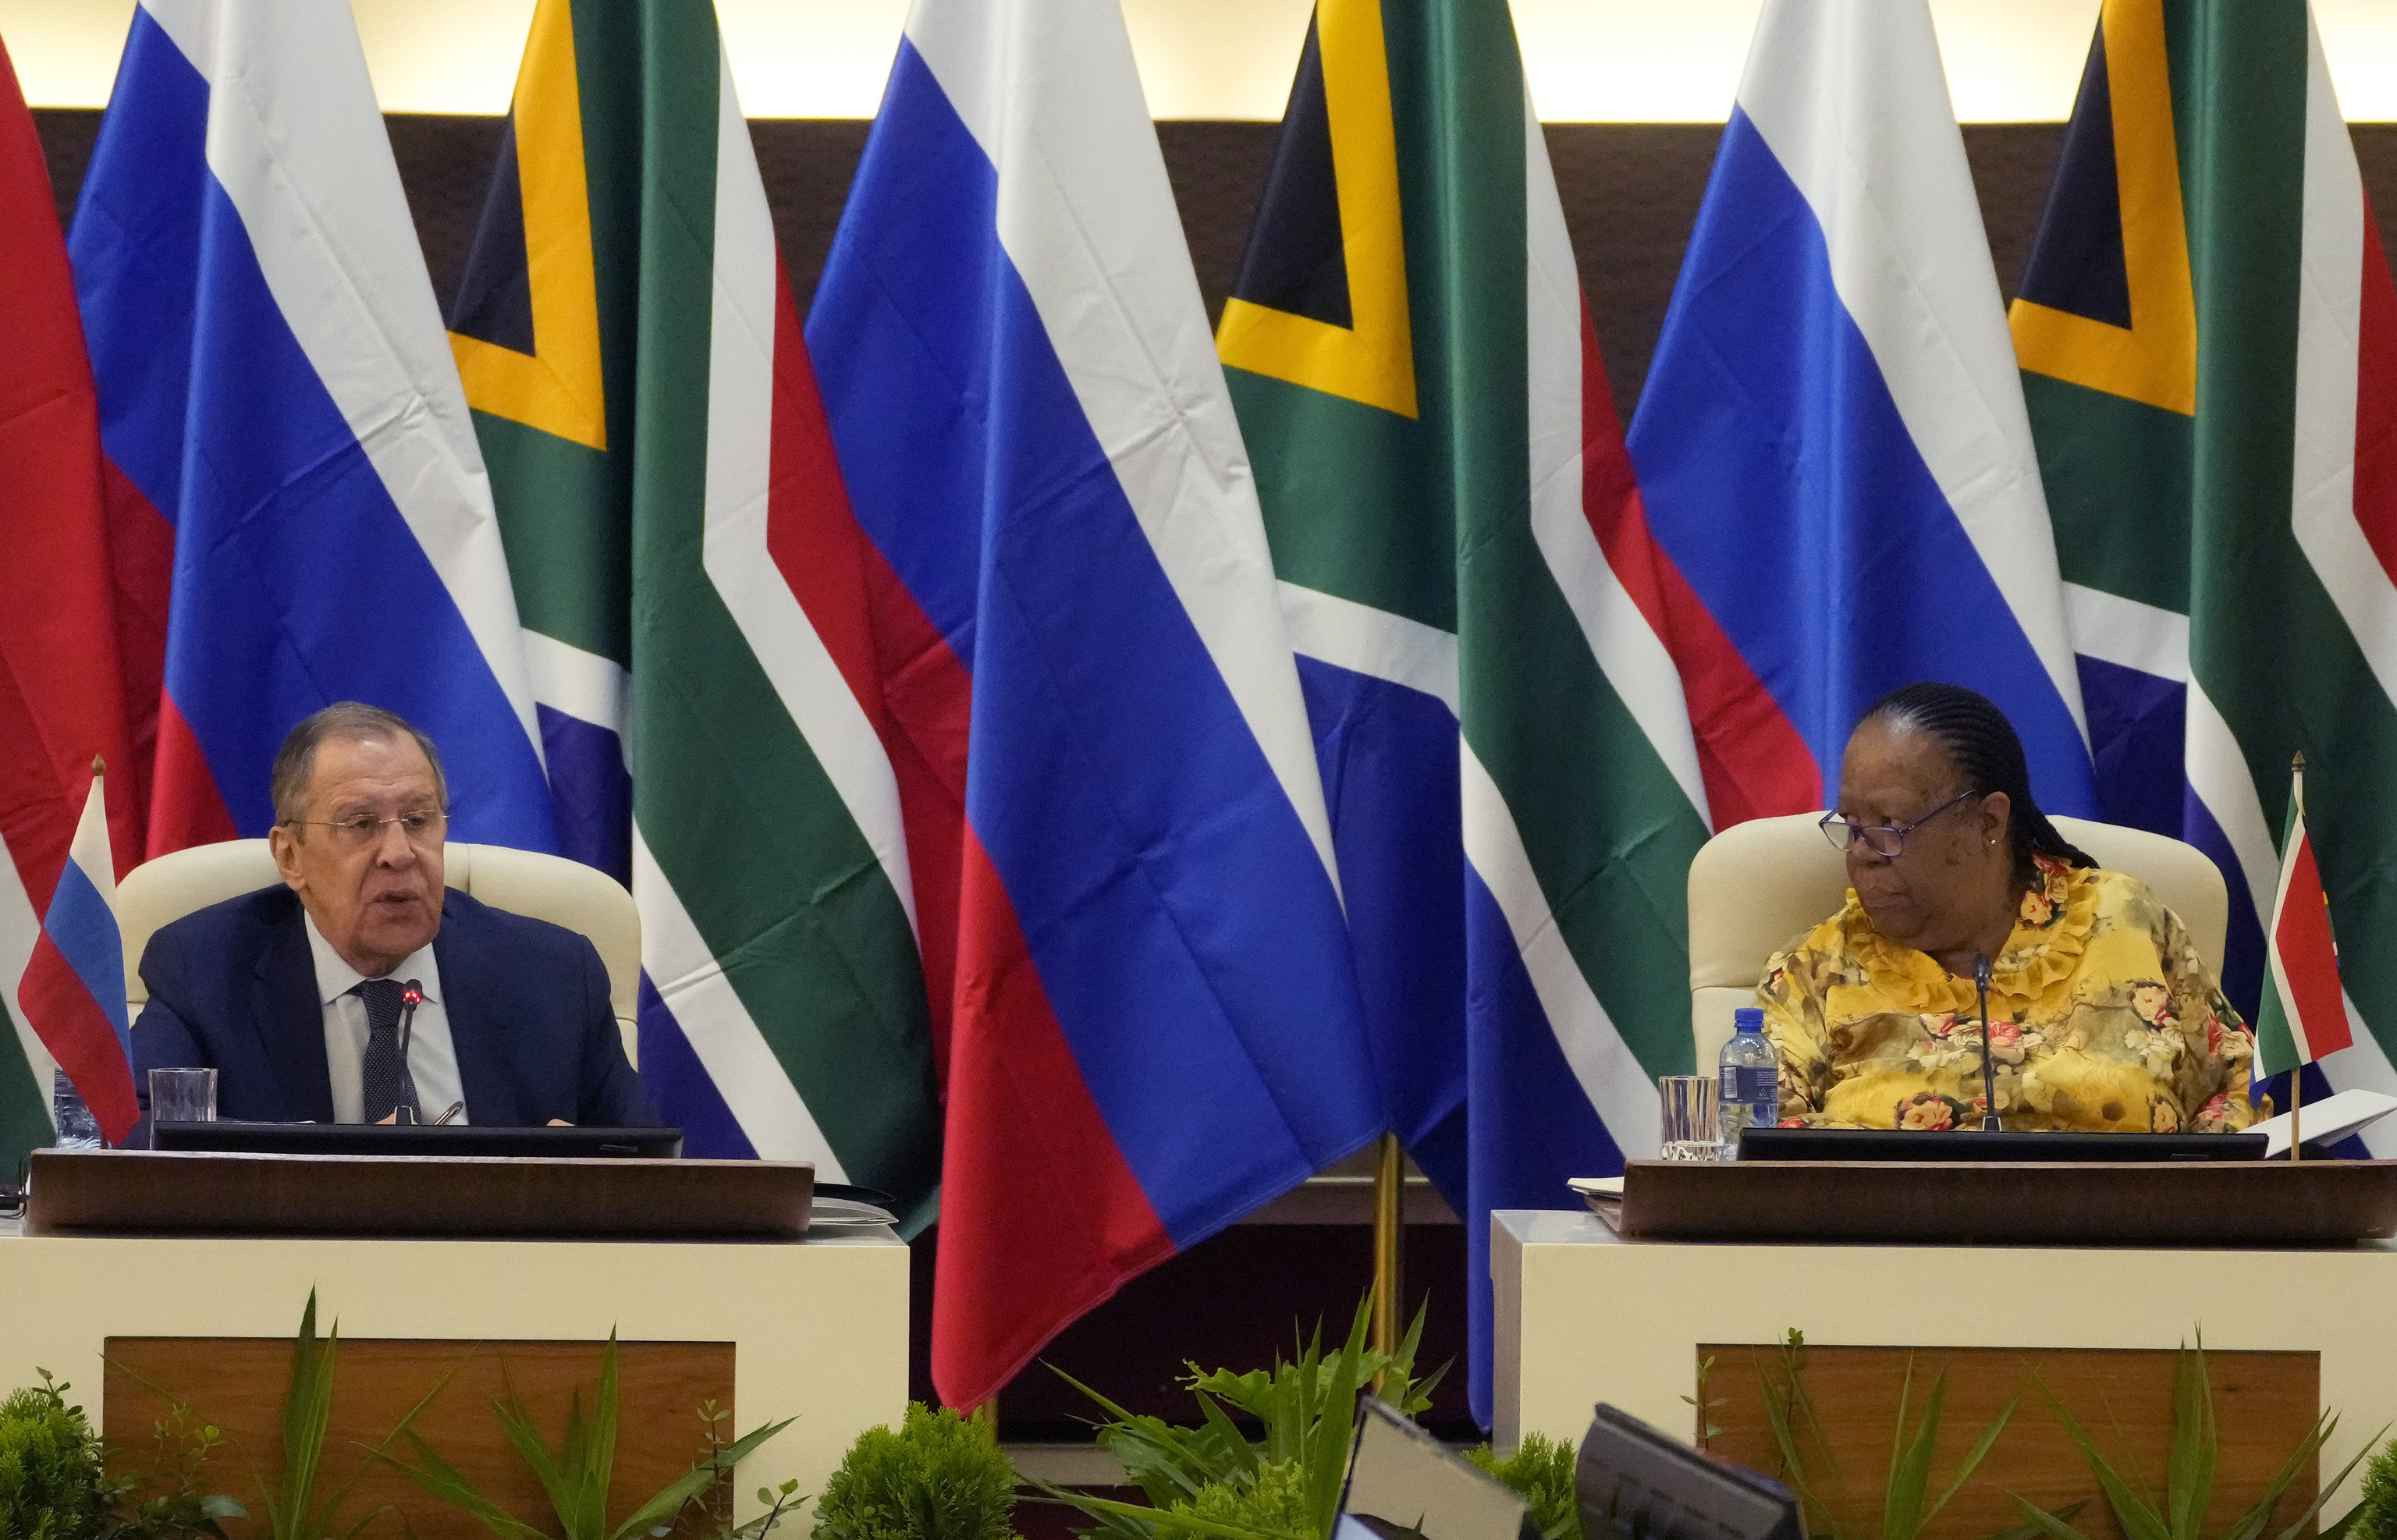 El ministro de Asuntos Exteriores de Rusia, Sergey Lavrov, izda., habla mientras su homólogo de Sudáfrica en Naledi Pandor escucha, durante su reunión en Pretoria, Sudáfrica.